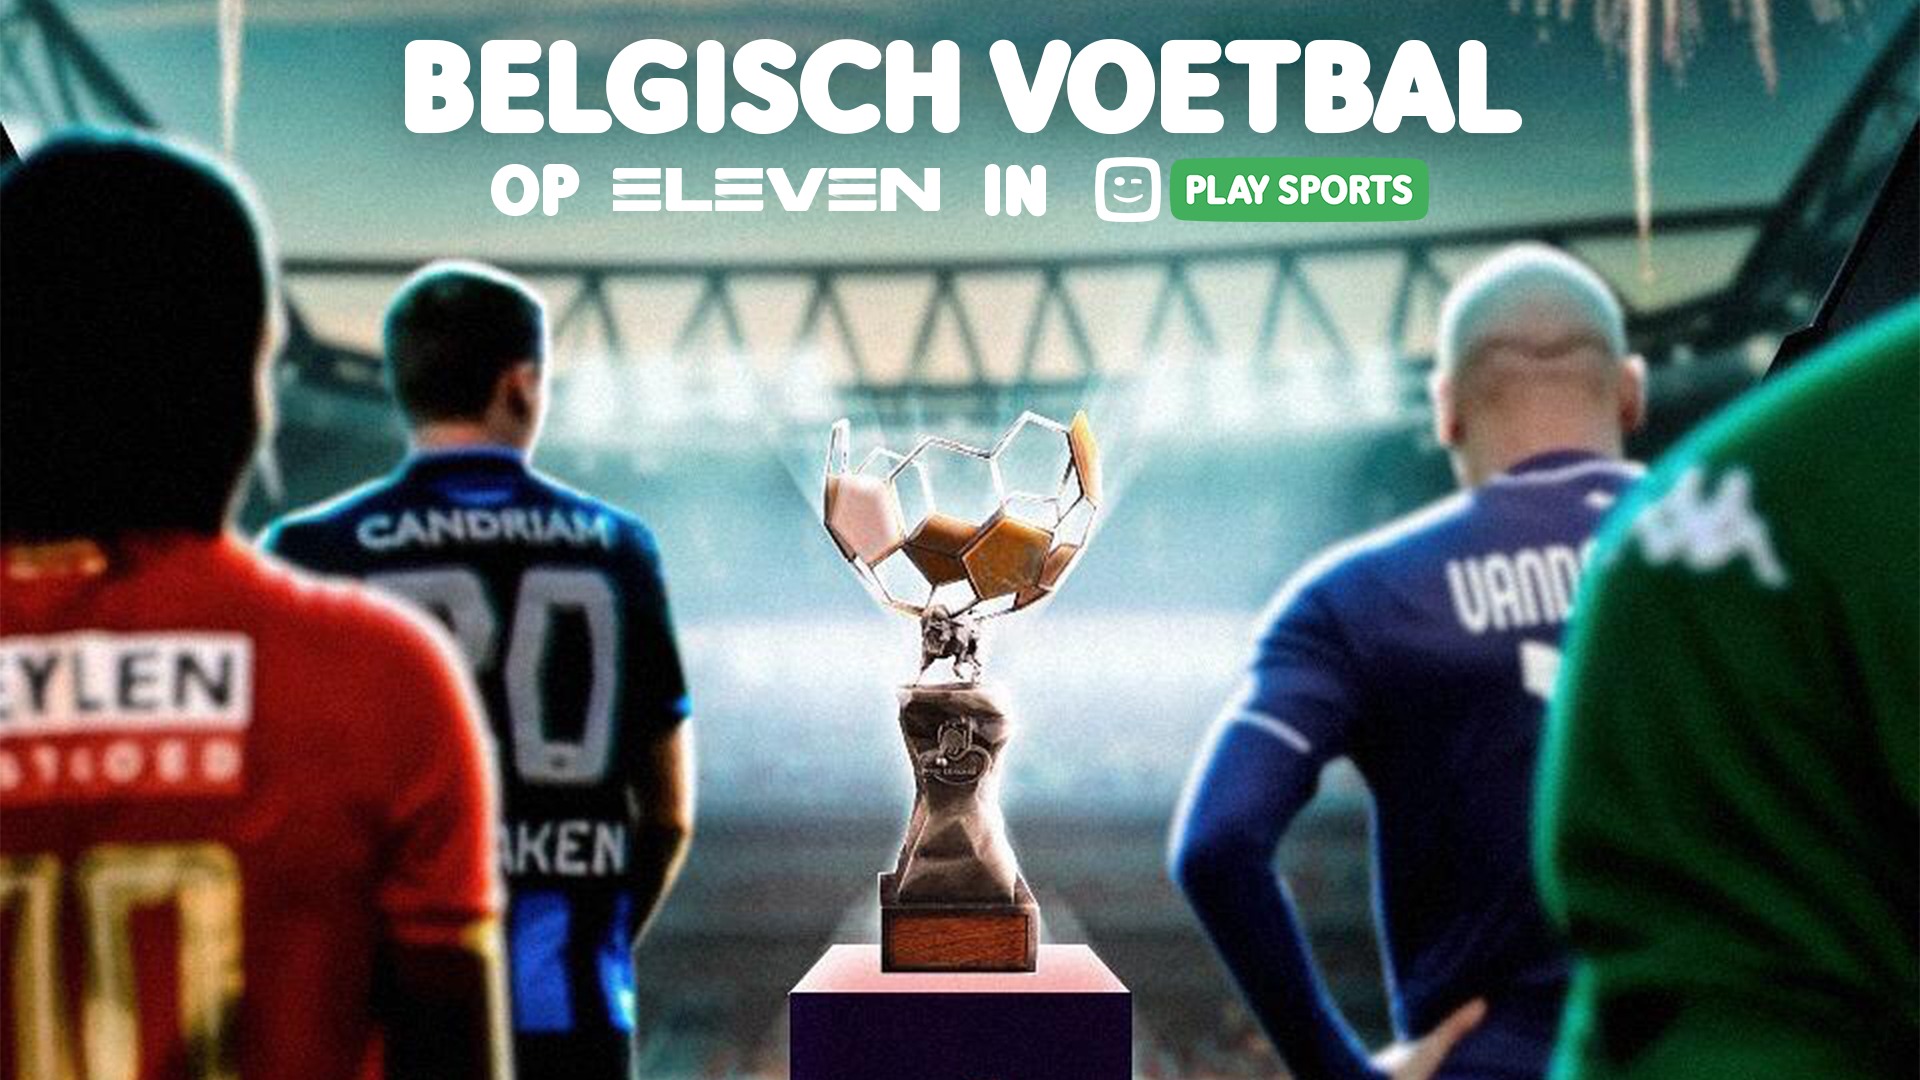 Gezicht omhoog verdrievoudigen Ontslag nemen Play Sports on Twitter: "GOED NIEUWS: Vanaf dit weekend terug Belgisch  voetbal in Play Sports! ⚽🇧🇪 https://t.co/kR2EsAlXe1" / Twitter